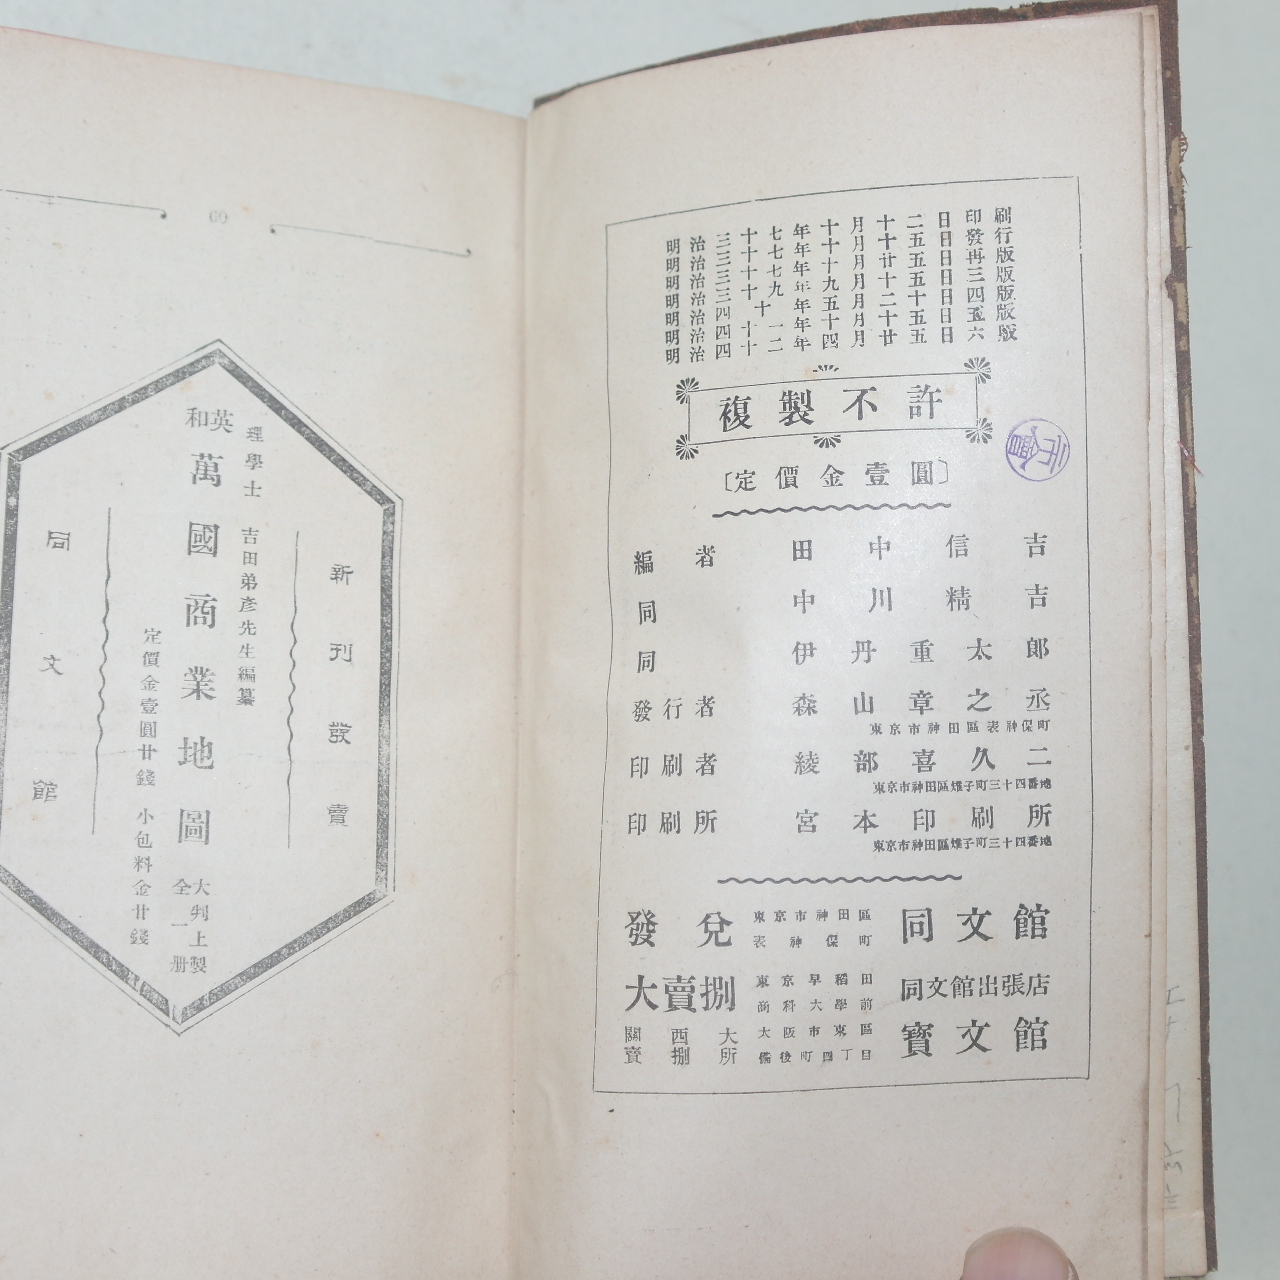 1909년(명치42년) 상업신사휘(商業新辭彙)